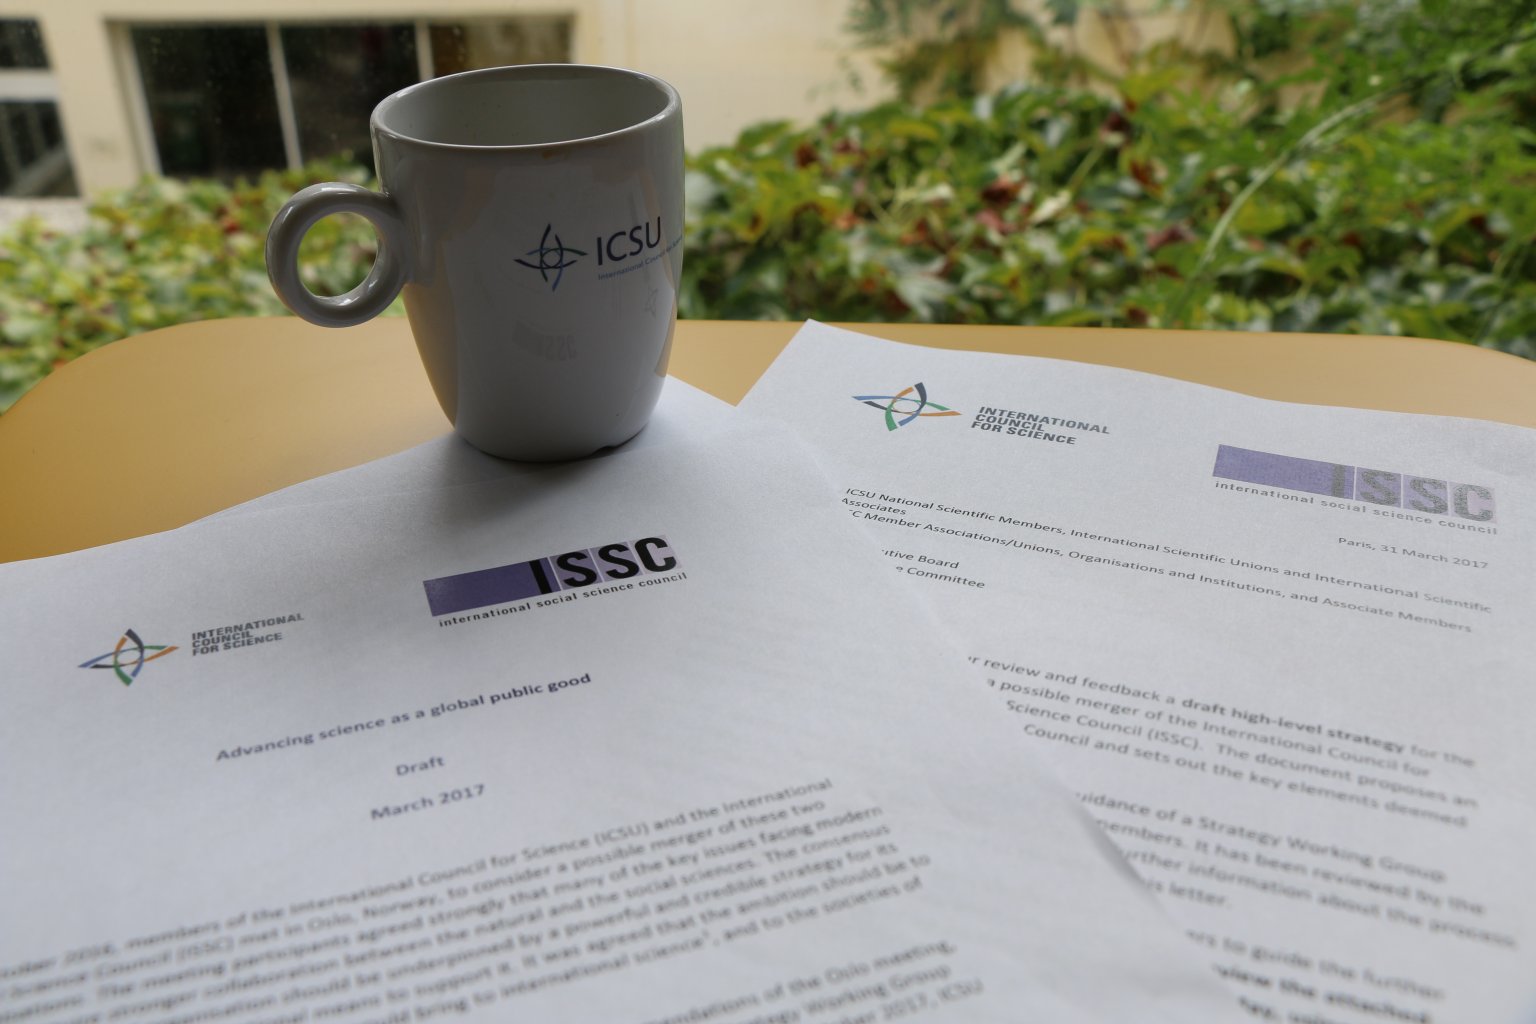 ¿Qué tienen que decir los miembros sobre el proyecto de estrategia propuesto por ICSU-ISSC?